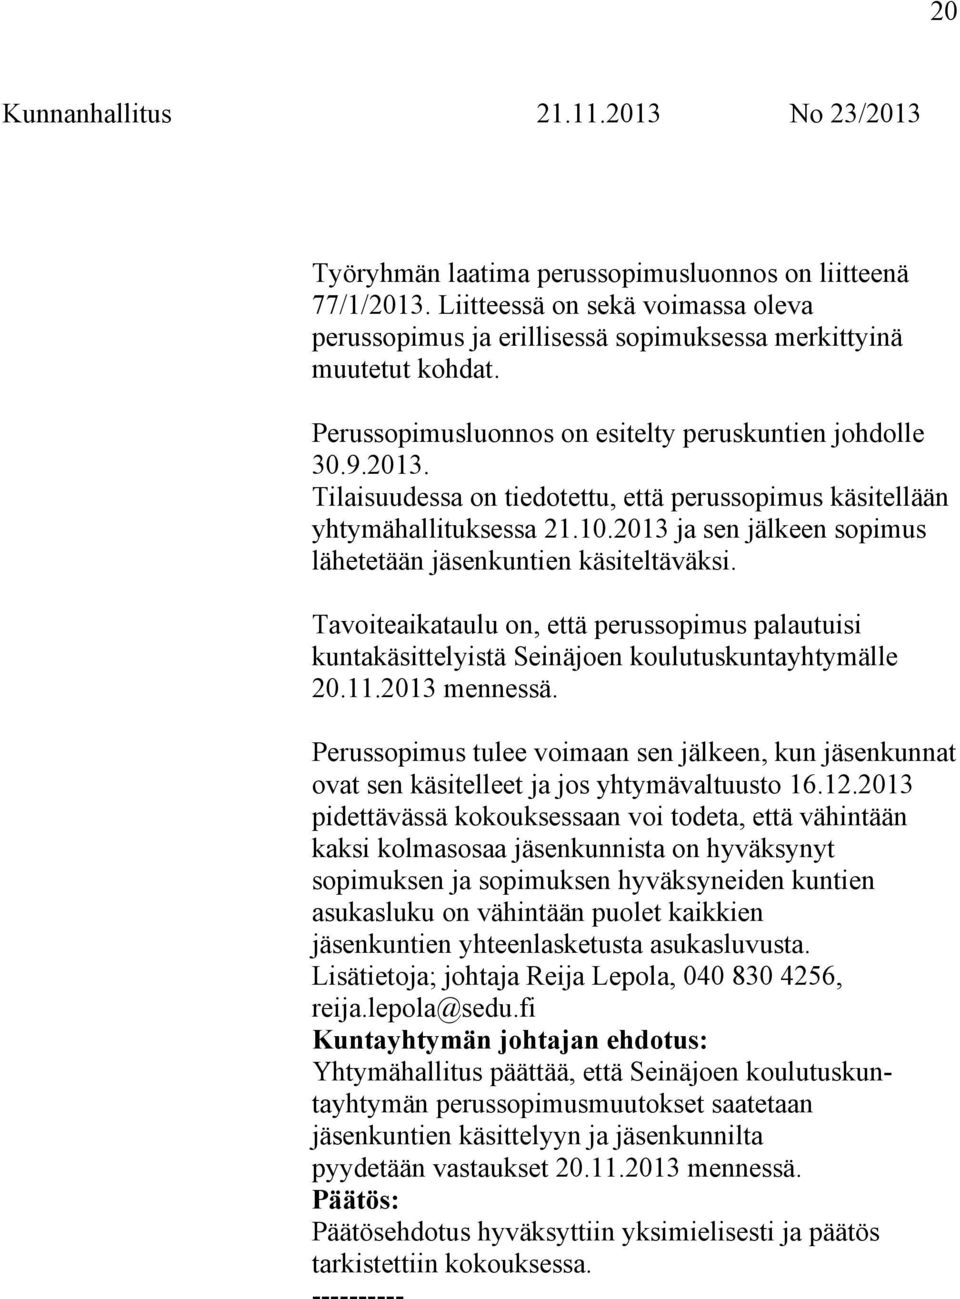 2013 ja sen jälkeen sopimus lähetetään jäsenkuntien käsiteltäväksi. Tavoiteaikataulu on, että perussopimus palautuisi kuntakäsittelyistä Seinäjoen koulutuskuntayhtymälle 20.11.2013 mennessä.